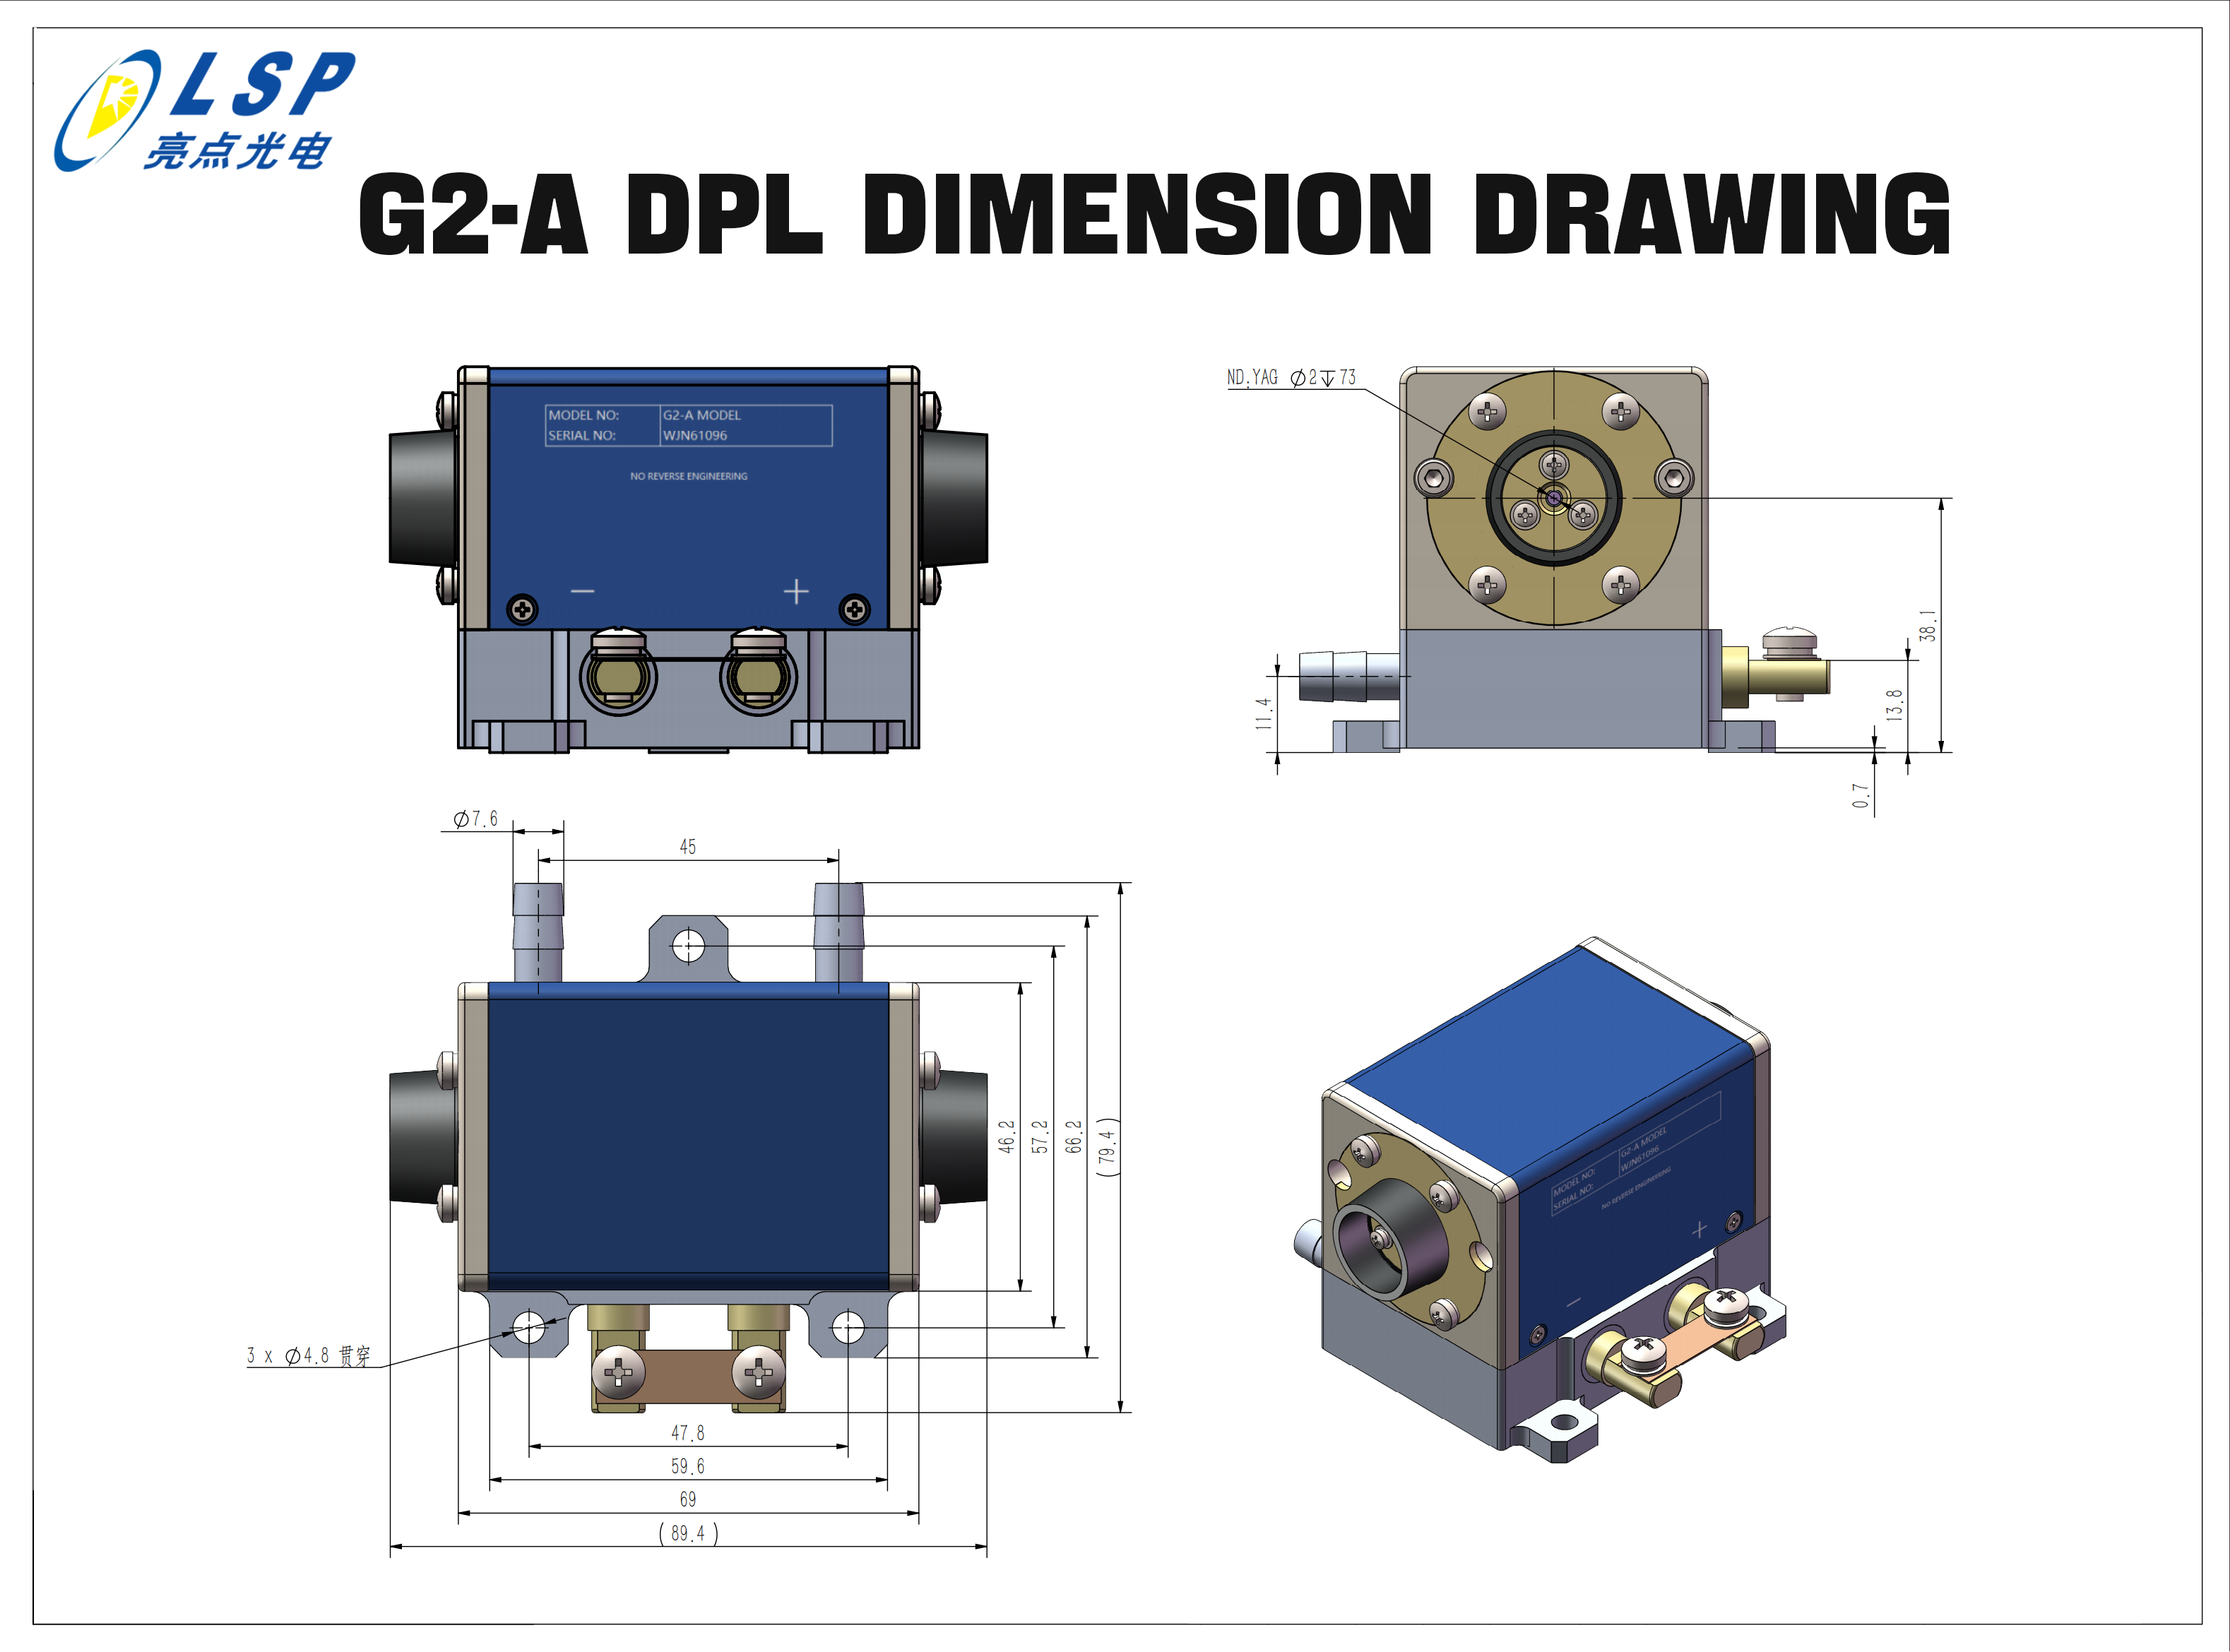 Dimenzionalni crtež G2-A